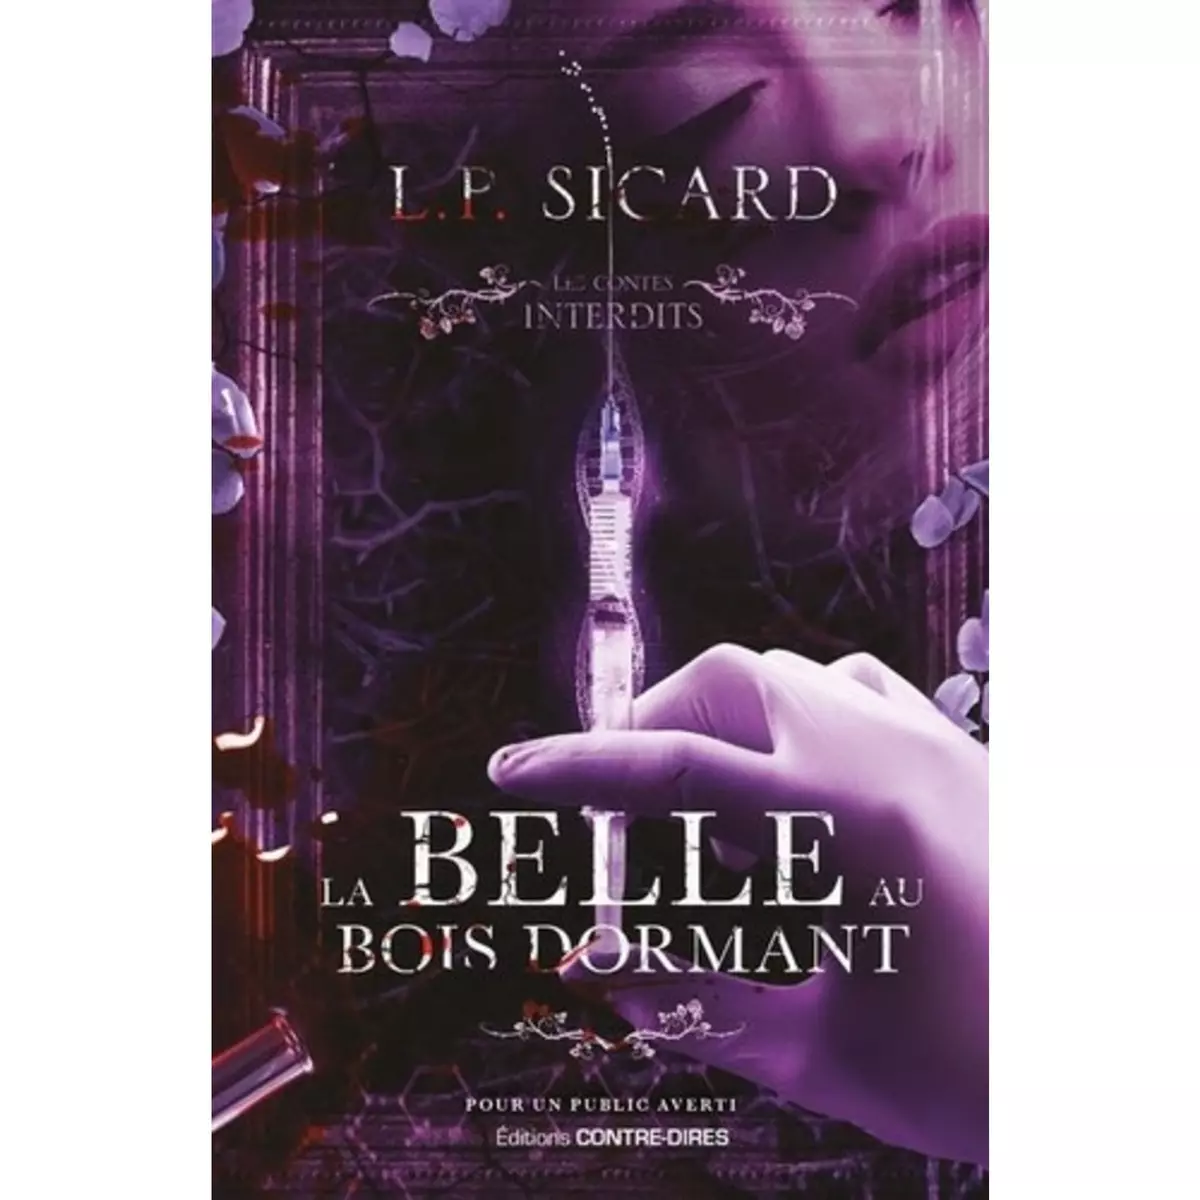  LA BELLE AU BOIS DORMANT, Sicard L.-P.